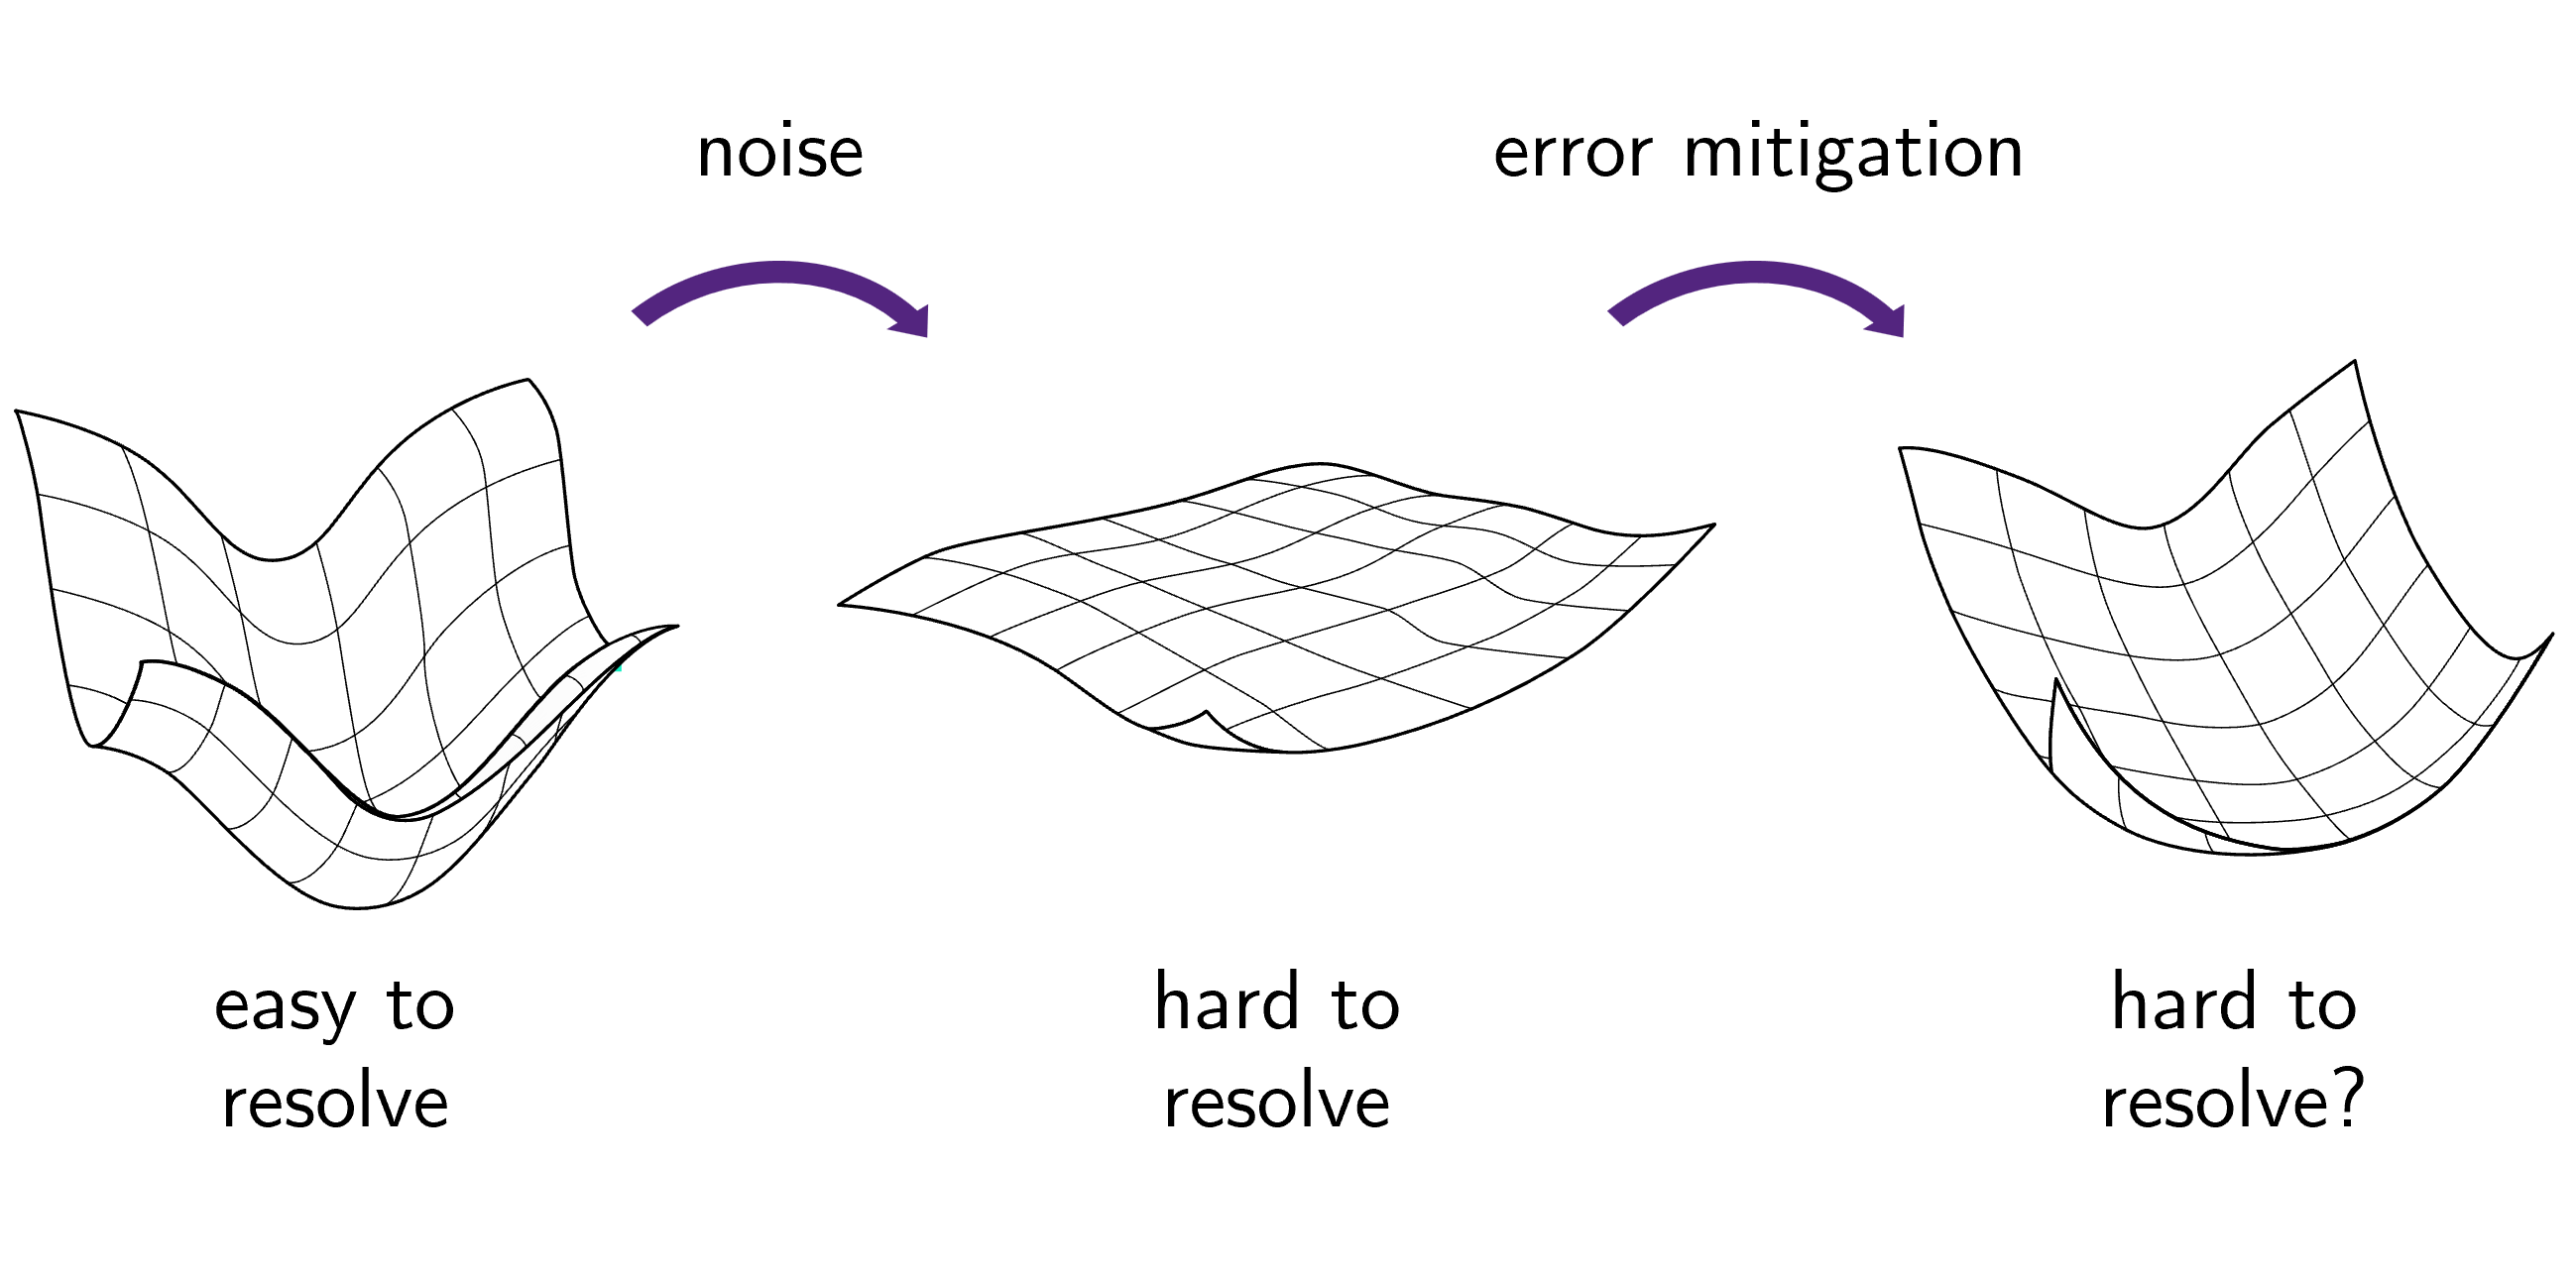 Kas vigade leevendamine võib parandada mürarikaste varieeruvate kvantalgoritmide treenitavust?